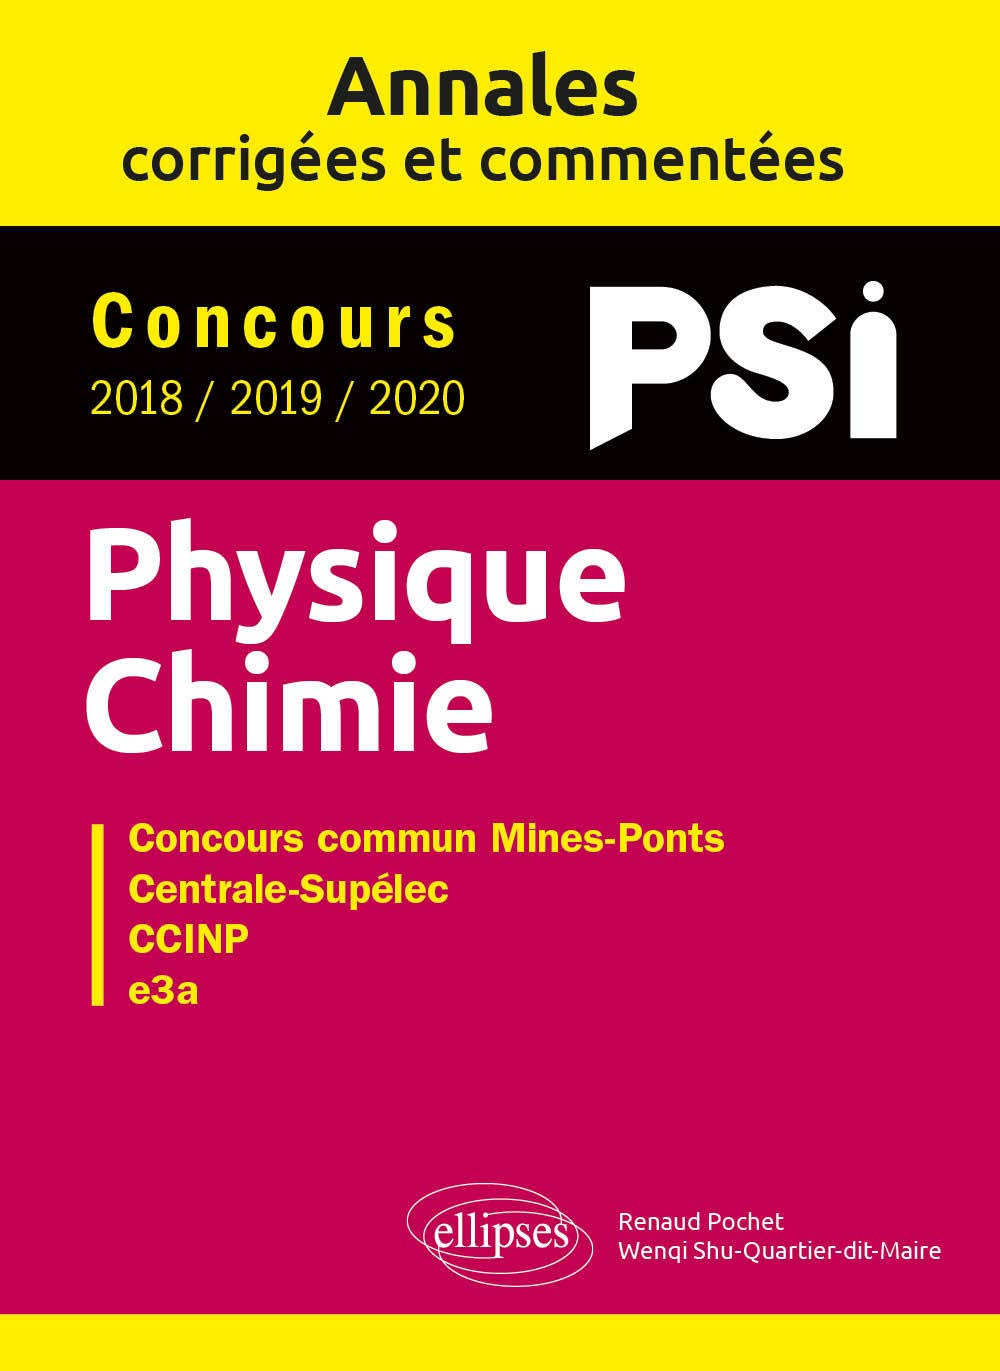 Physique chimie PSI : annales corrigées et commentées, concours 2018, 2019, 2020 : concours commun M